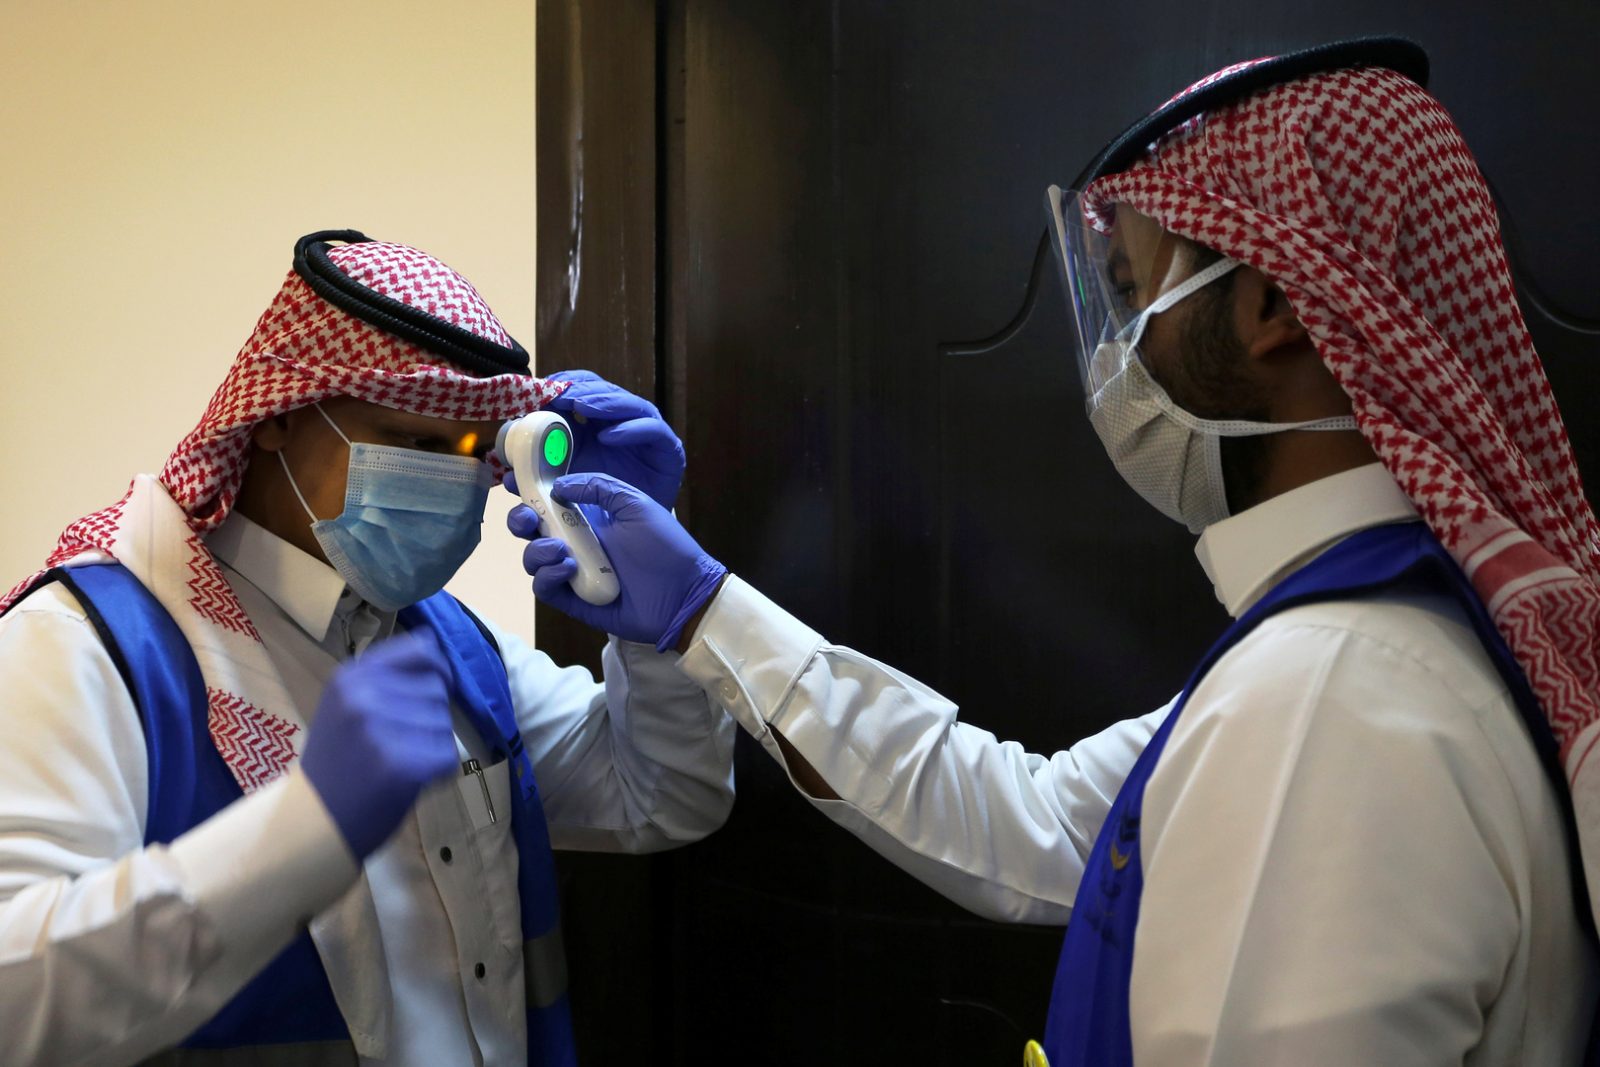 لمواجهة وباء كورونا.. السعودية تقرر استمرار العمل بالإجراءات الاحترازية وإيقاف الأنشطة 30 يوماً